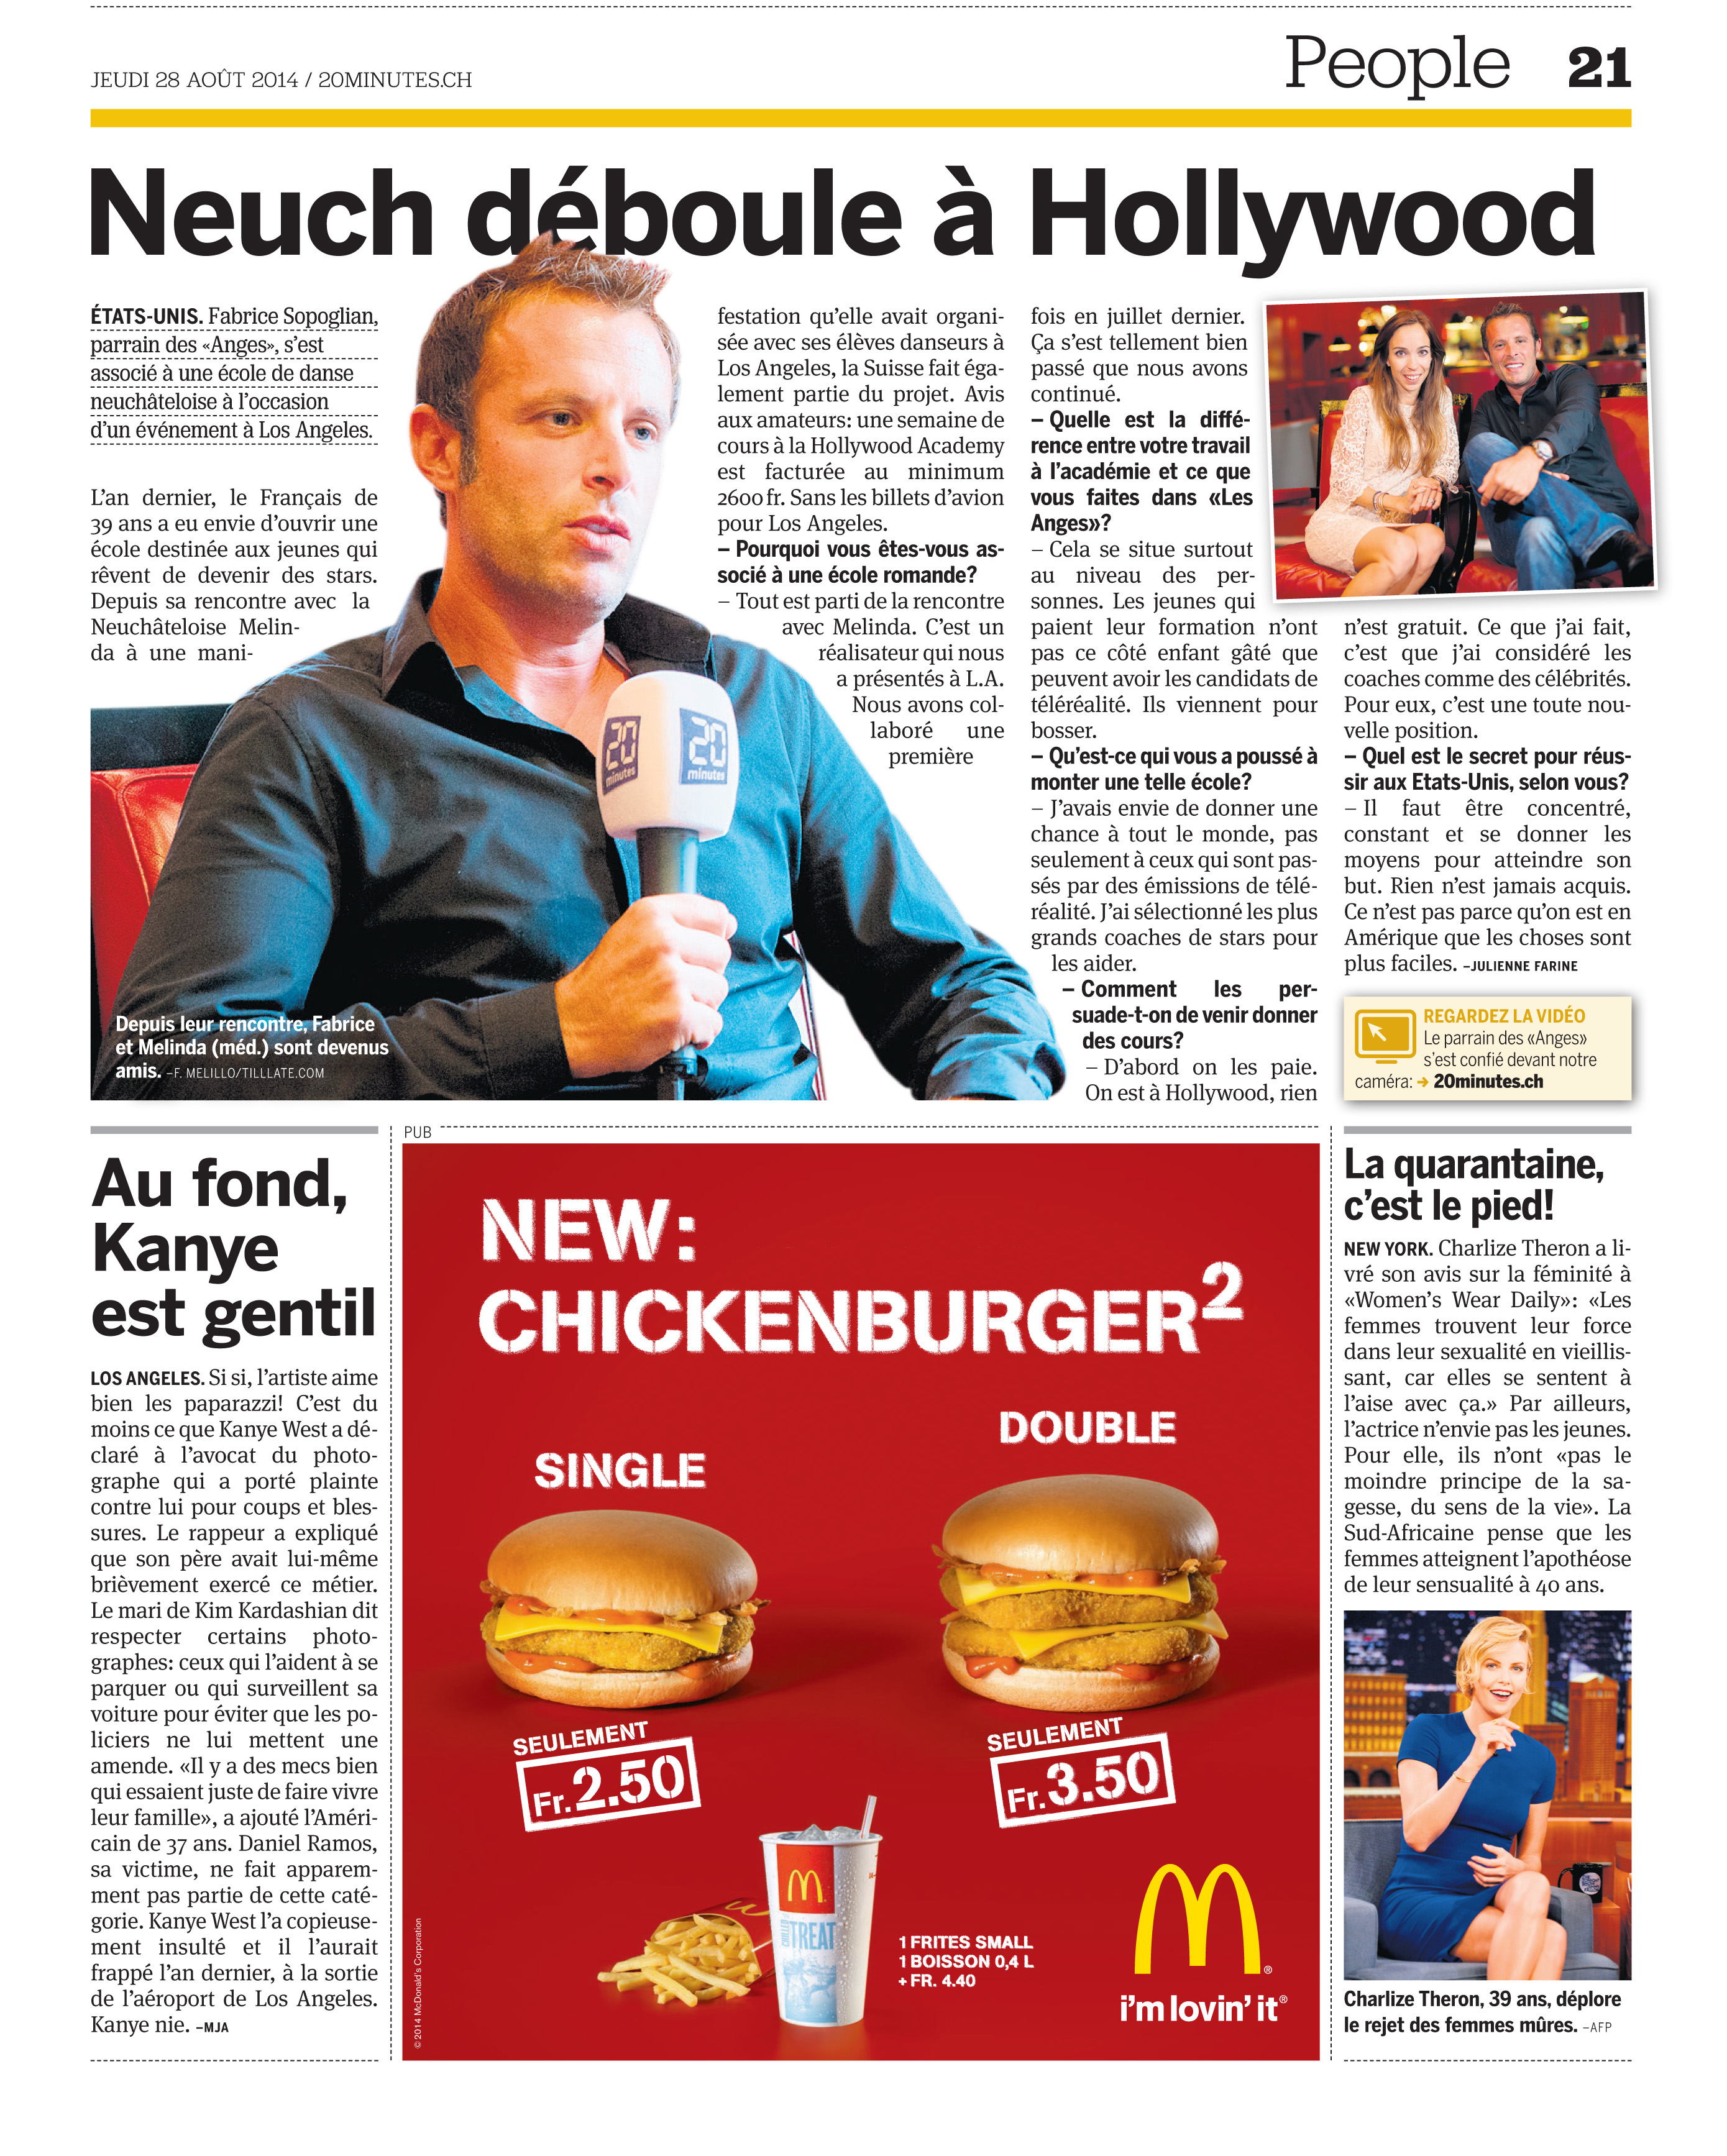 Swiss newspaper 20 minutes 2014